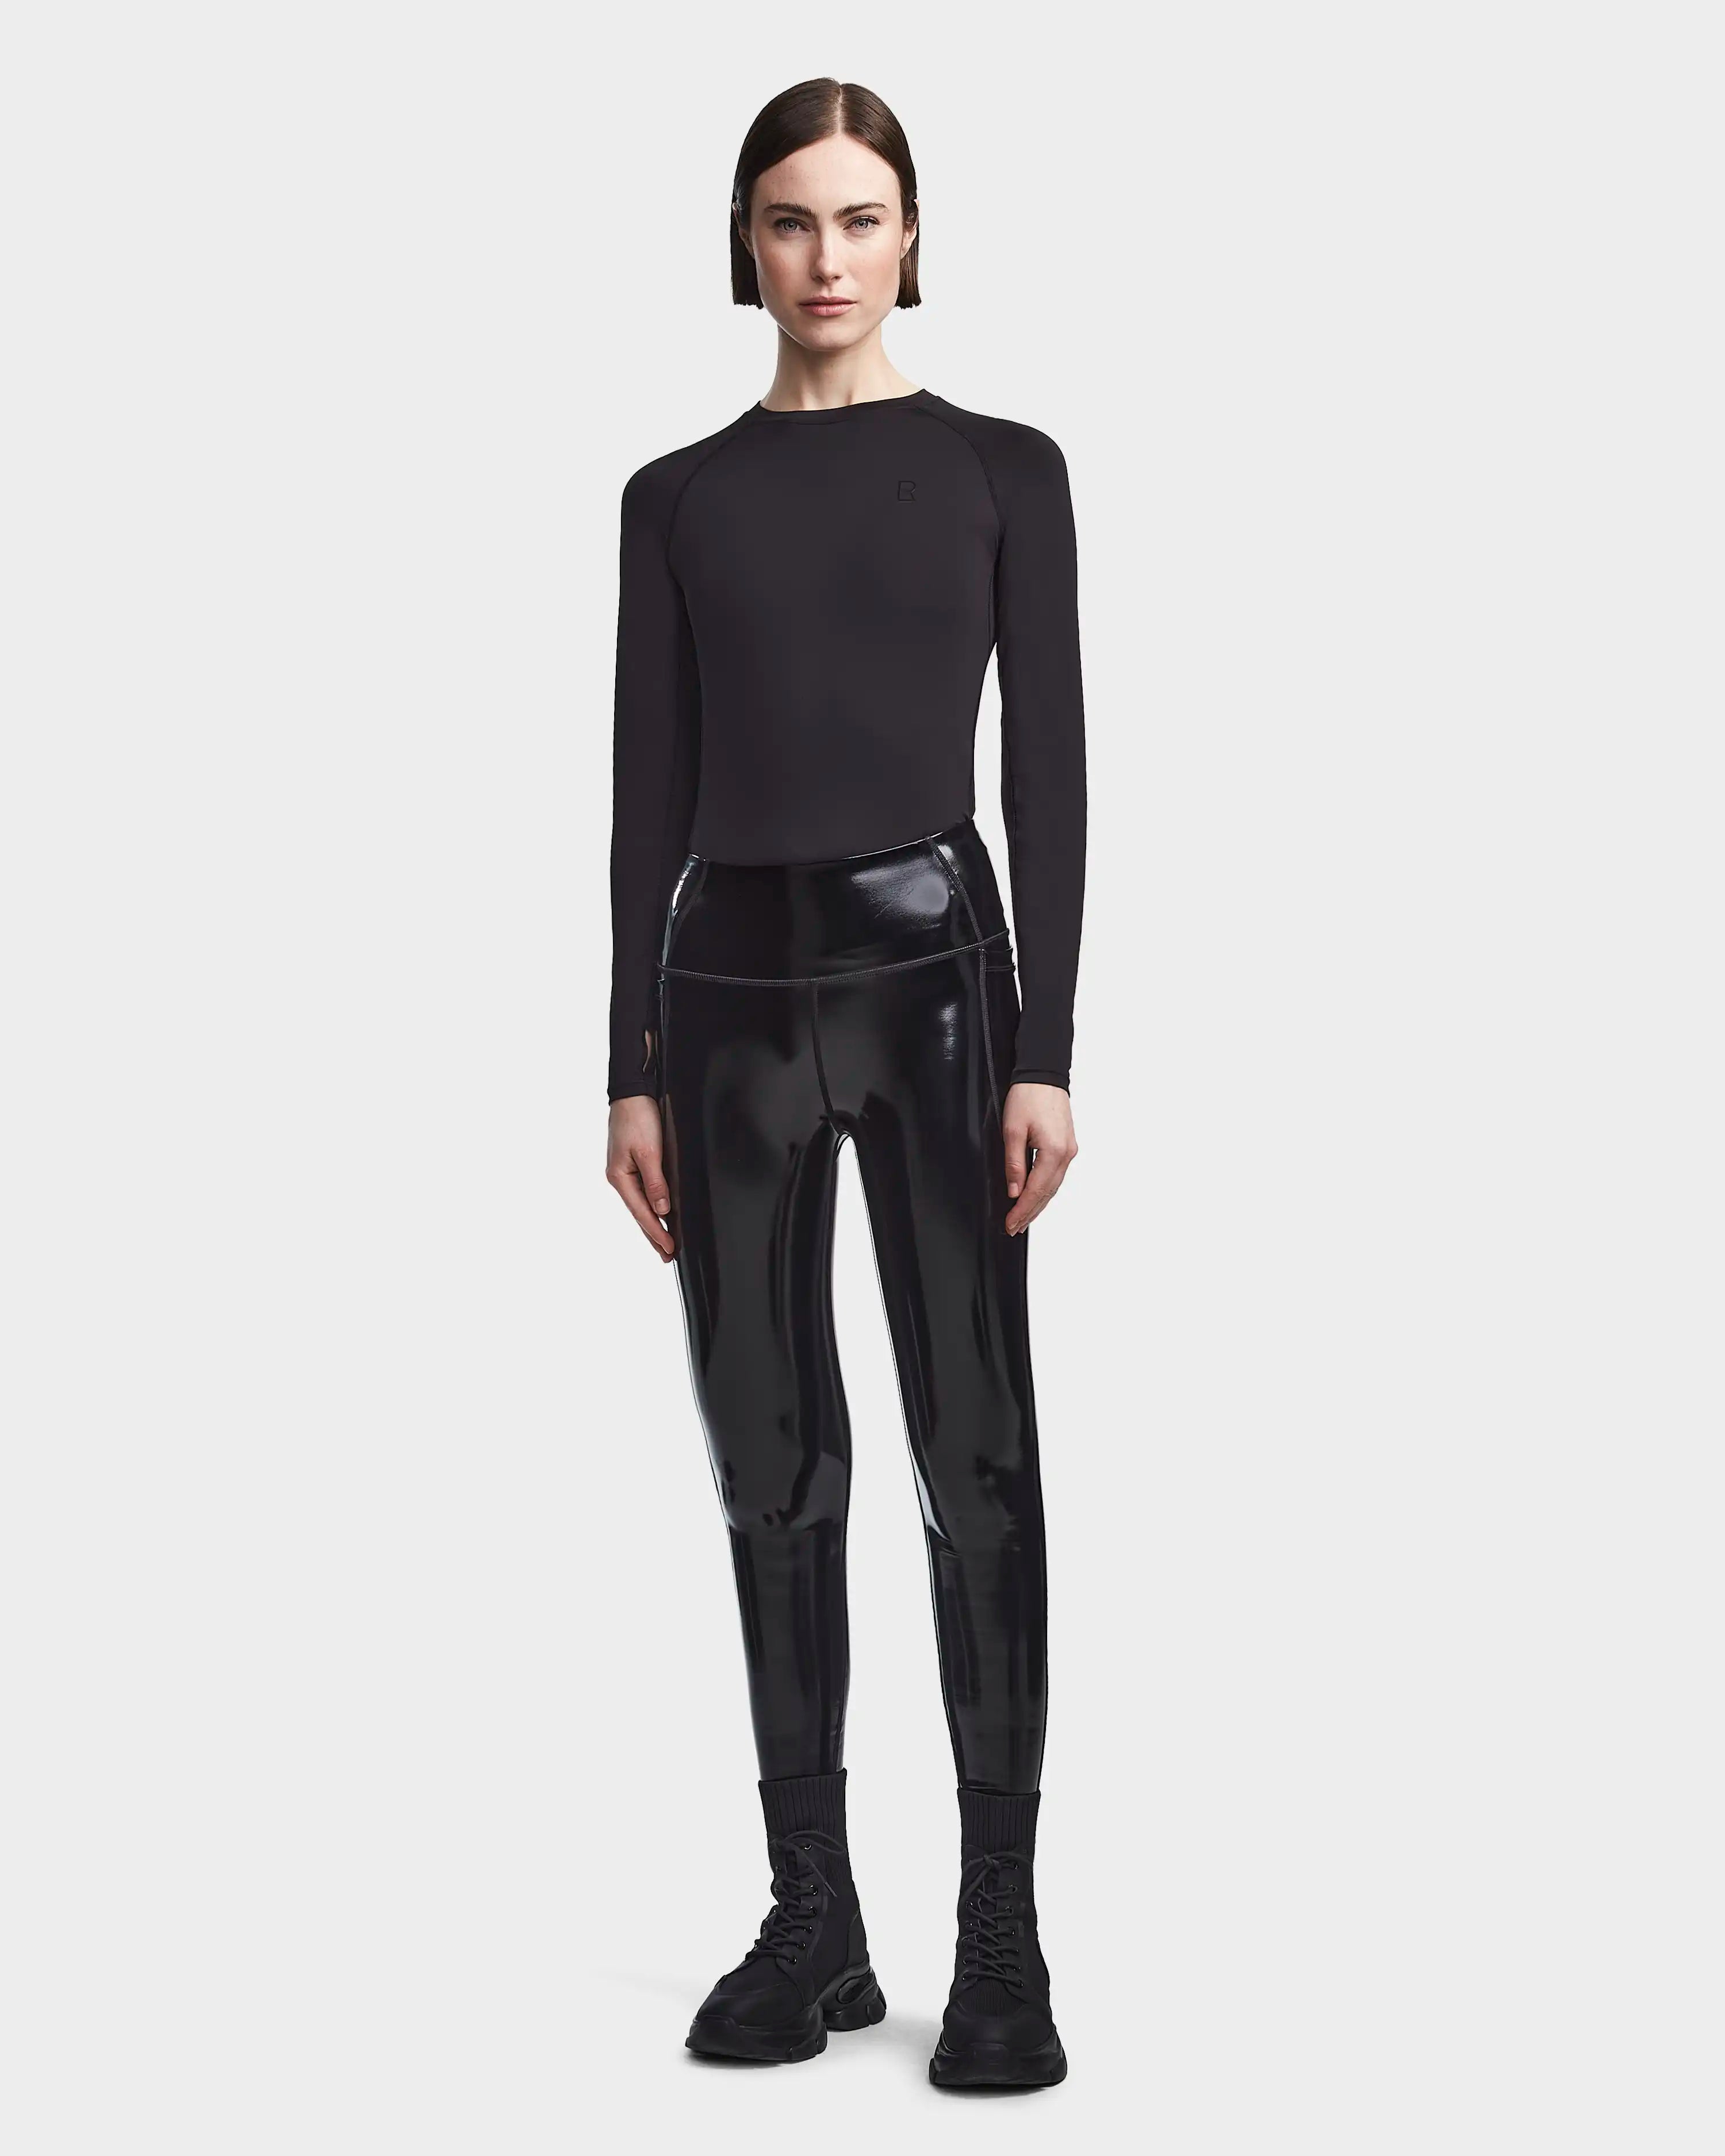 Womens Fashion Slim Black Faux Leather Leggings Stretchy Shiny